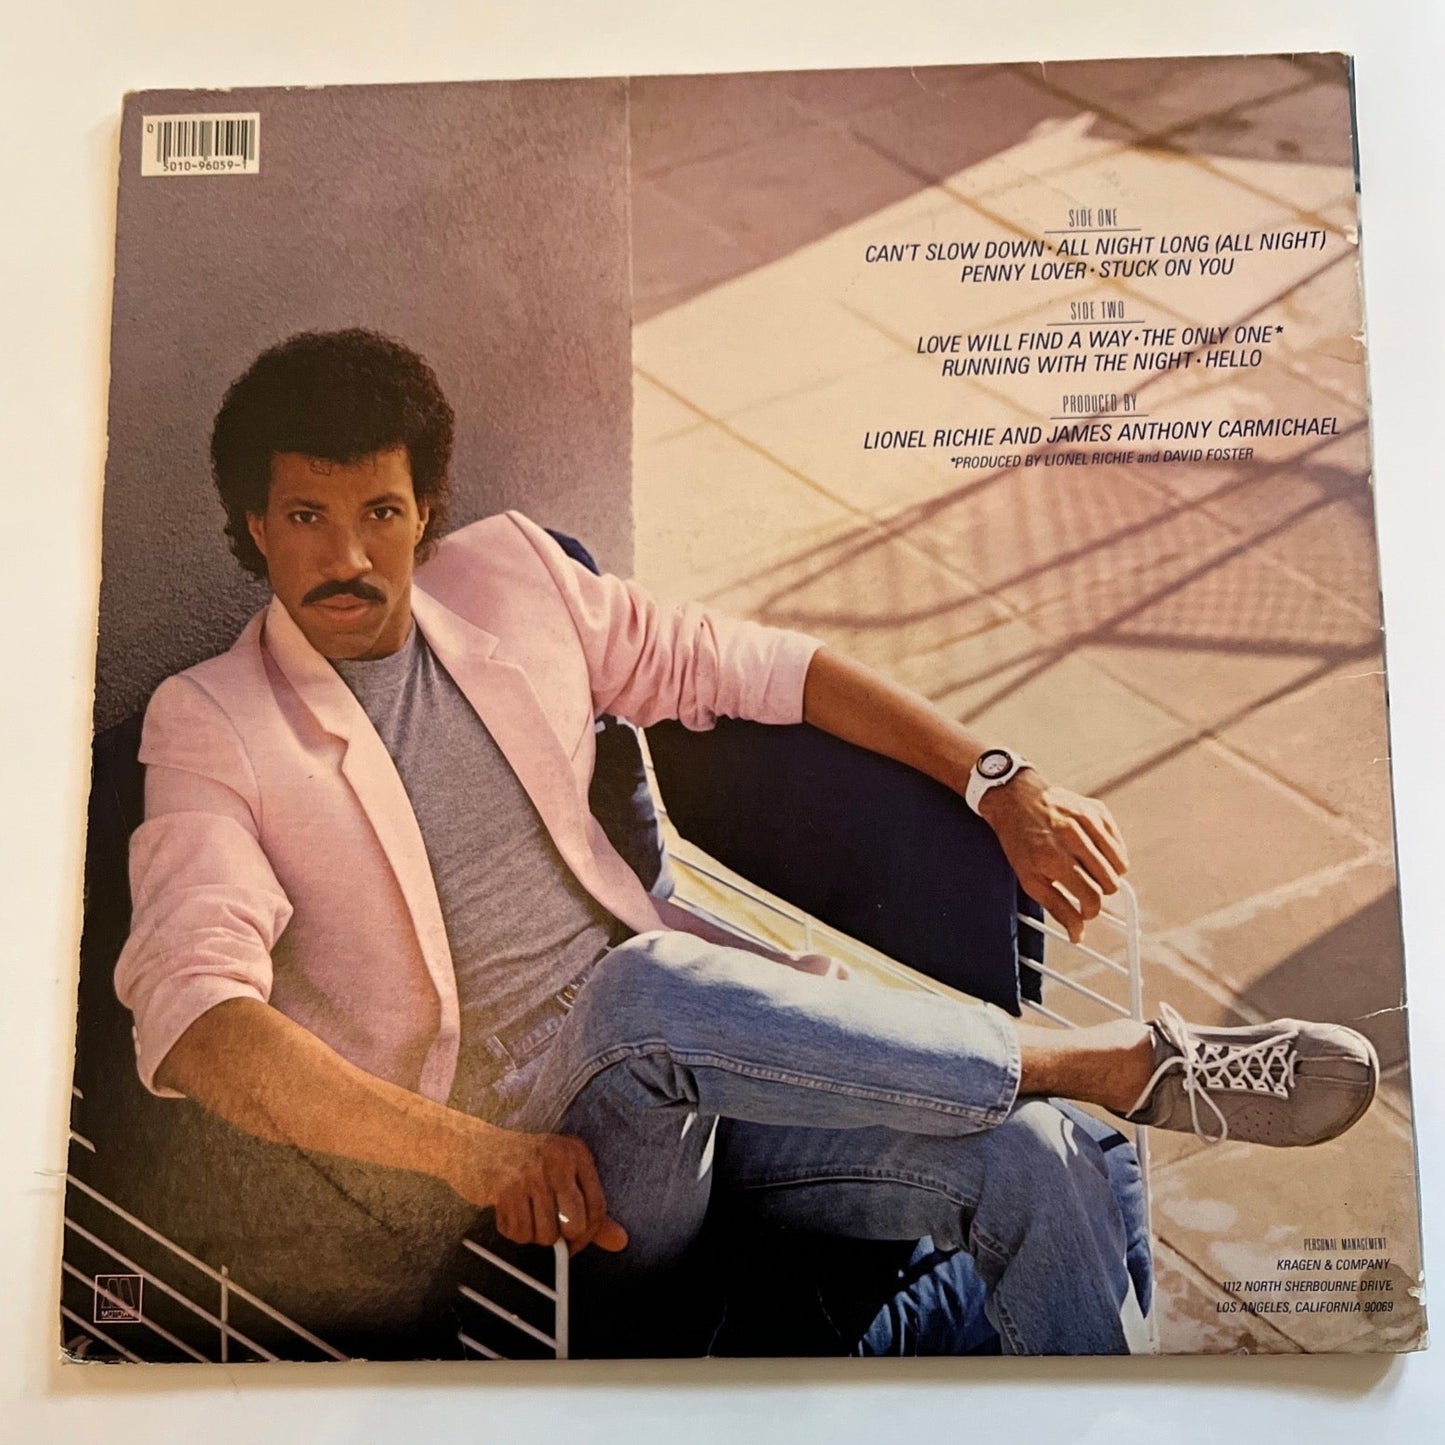 Lionel Richie “Can’t Slow Down” Gatefold Vinyl